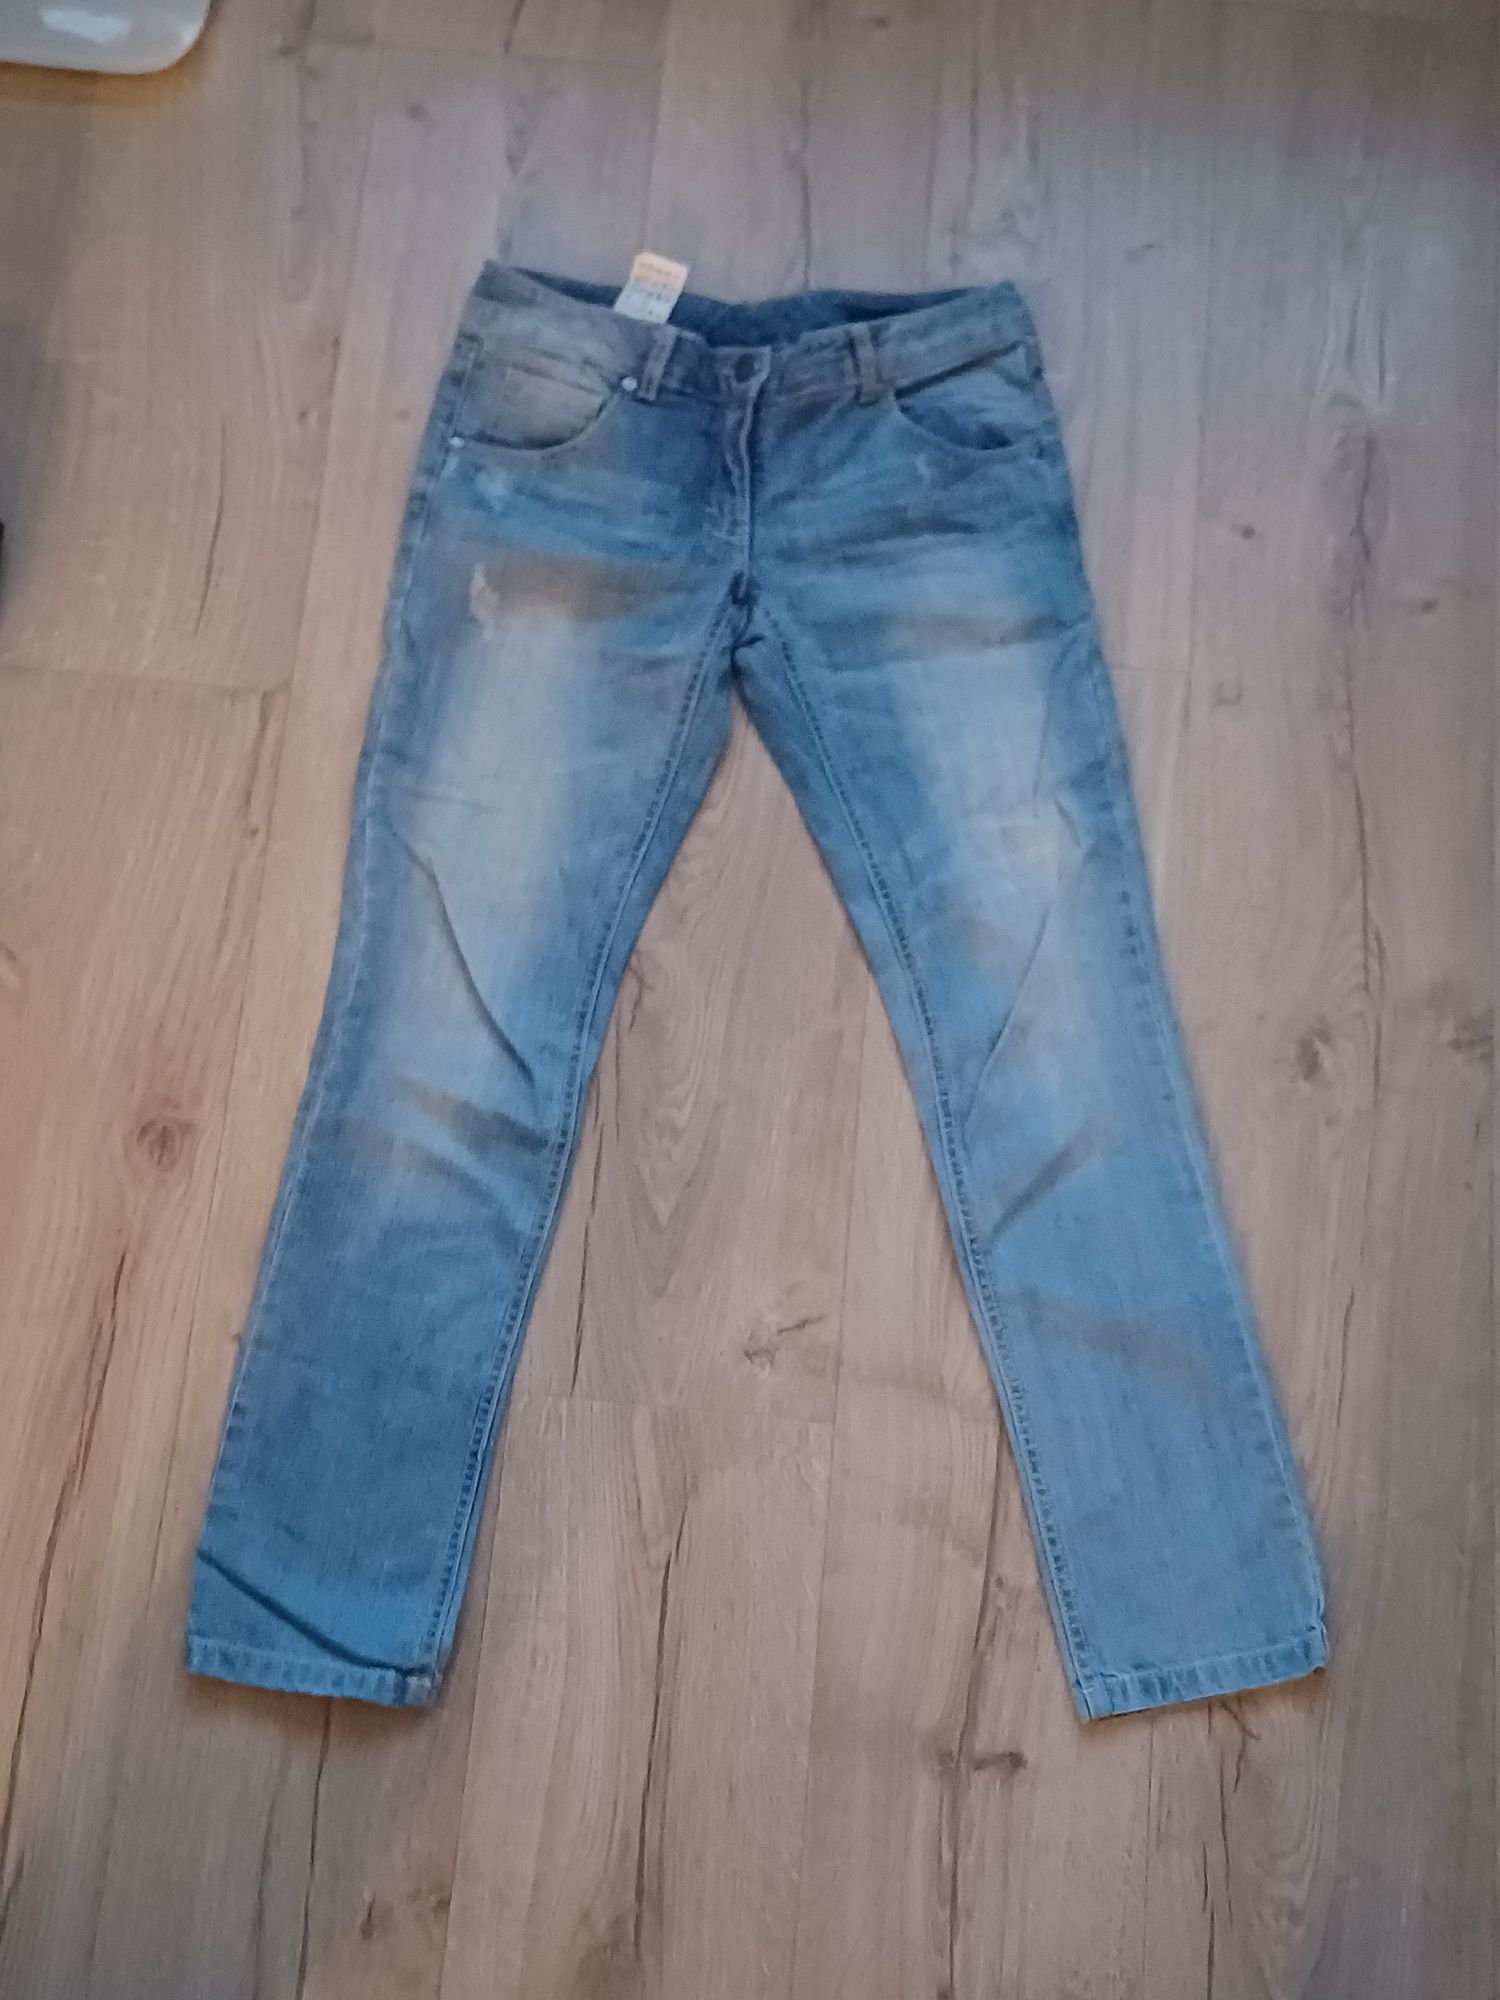 Скінні джинс сині